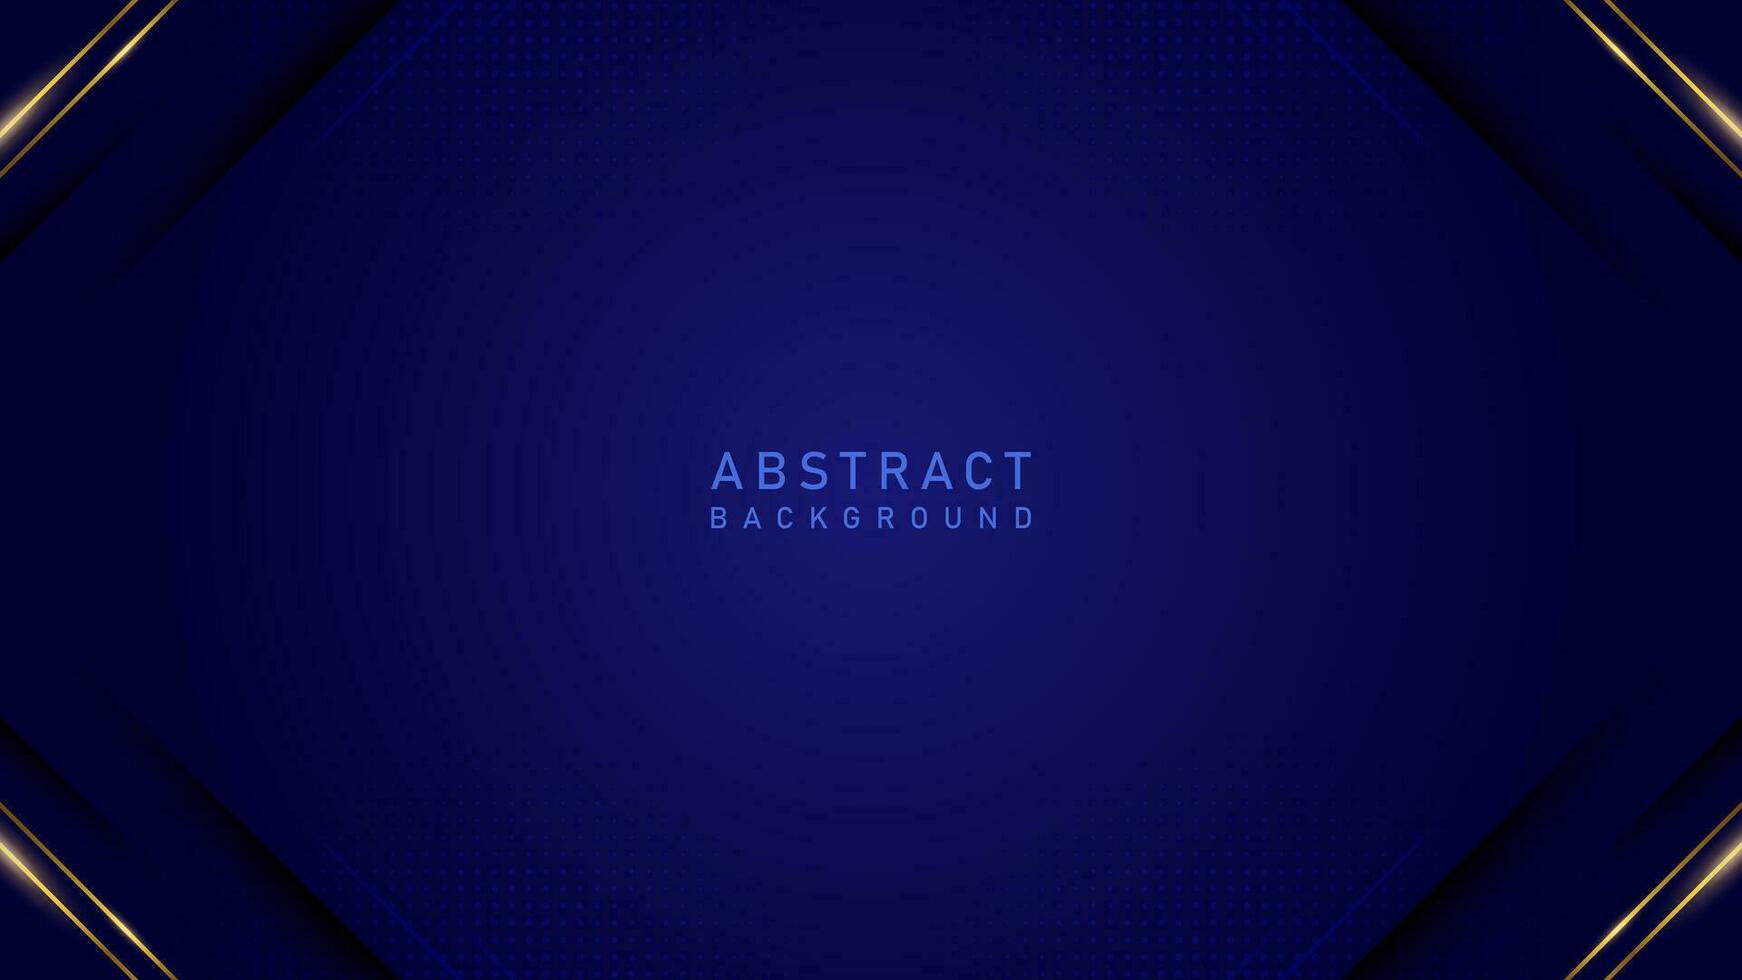 abstrakt elegant modern blå bakgrund för certifikat. lyx elegant tema design vektor illustration eps10